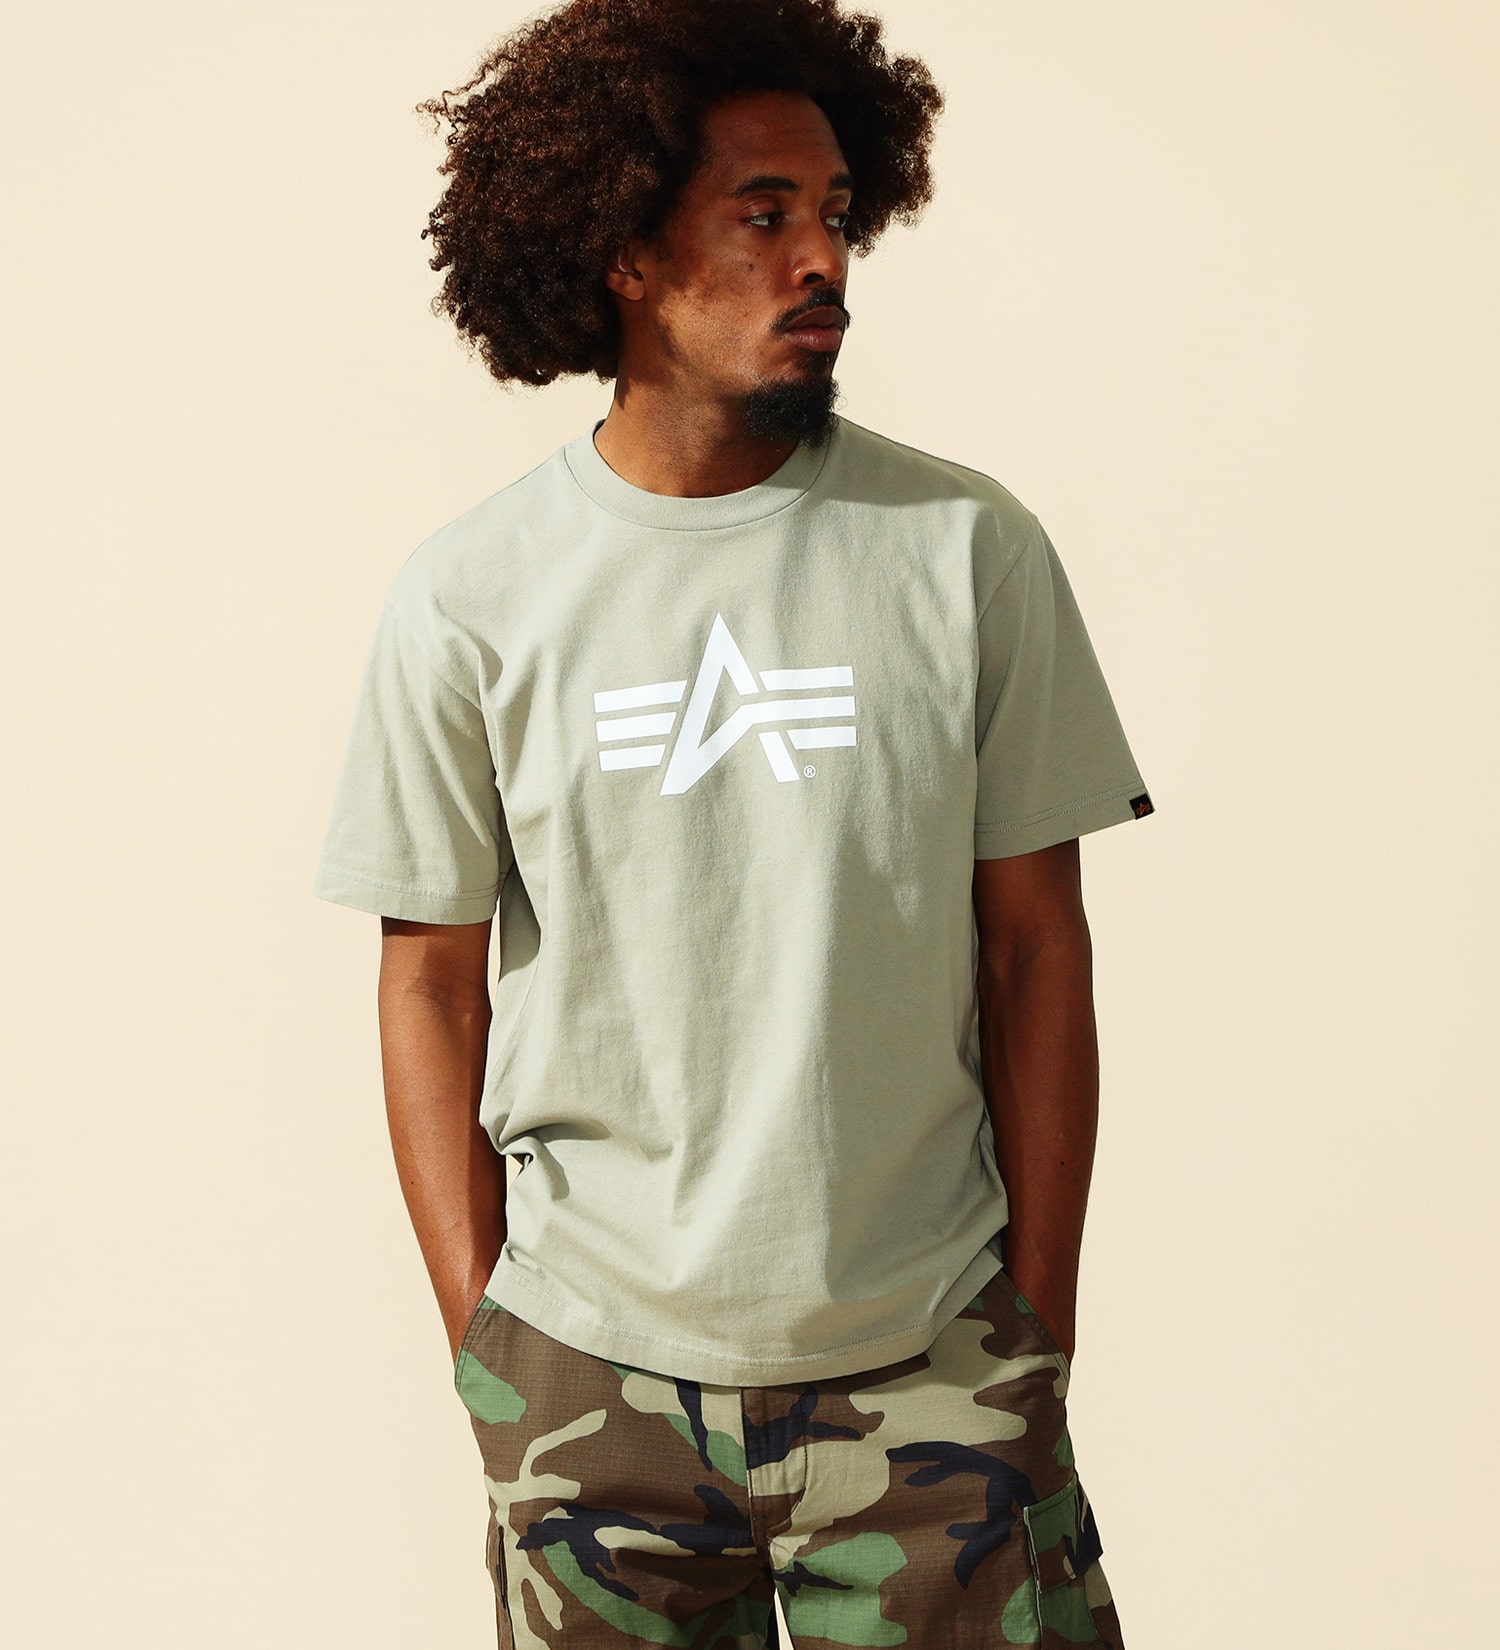 ALPHA(アルファ)のAマークロゴプリントTシャツ 半袖|トップス/Tシャツ/カットソー/メンズ|カーキ